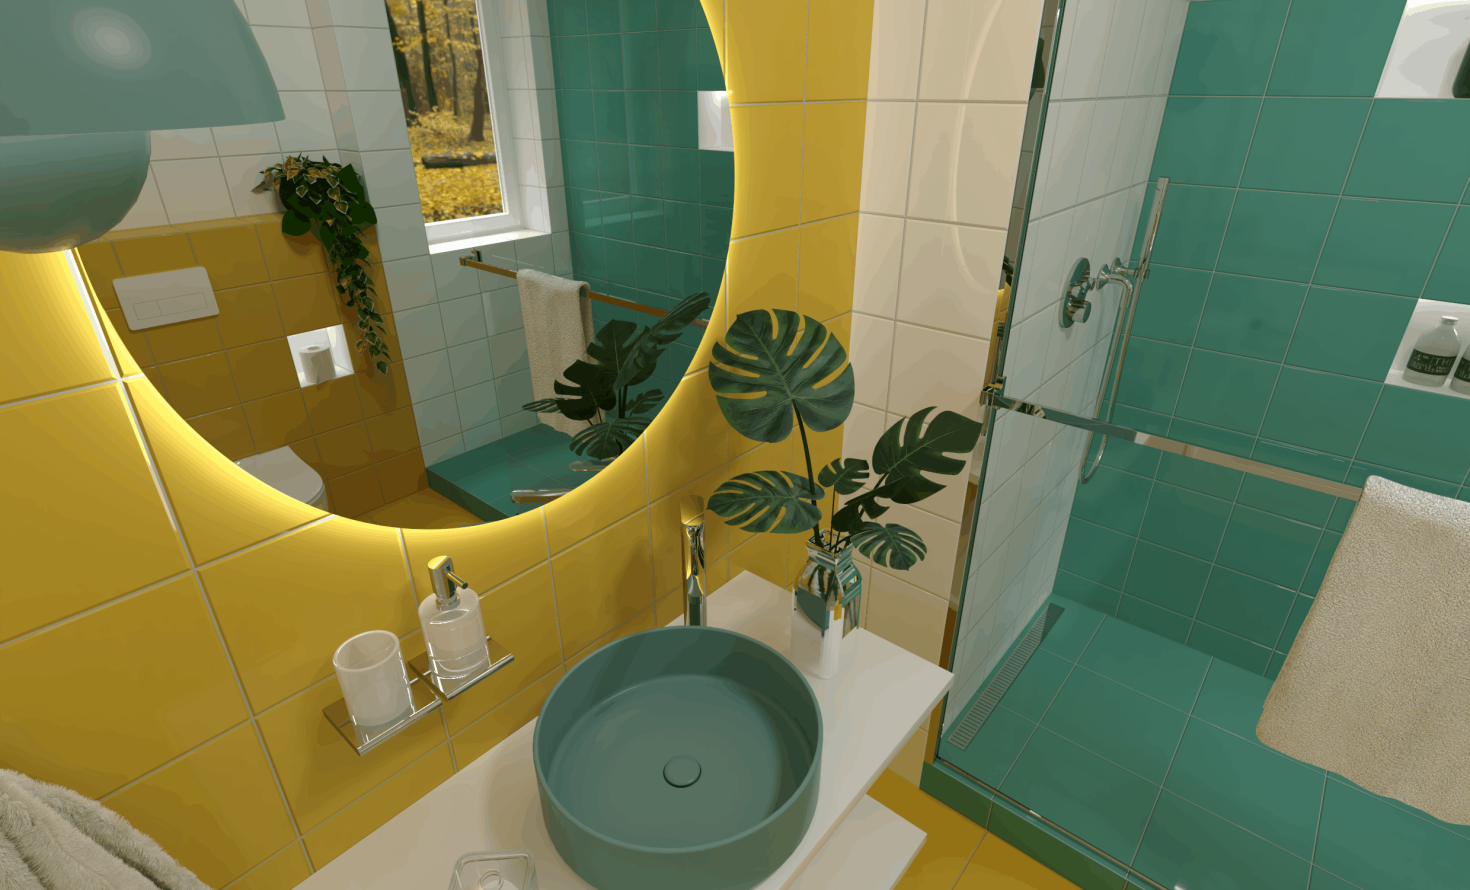 SIKO Farebná kúpeľňa, žltý, biely, tyrkysový obklad, farebné modré umývadlo na dosku, okrúhle zrkadlo s LED osvetlením